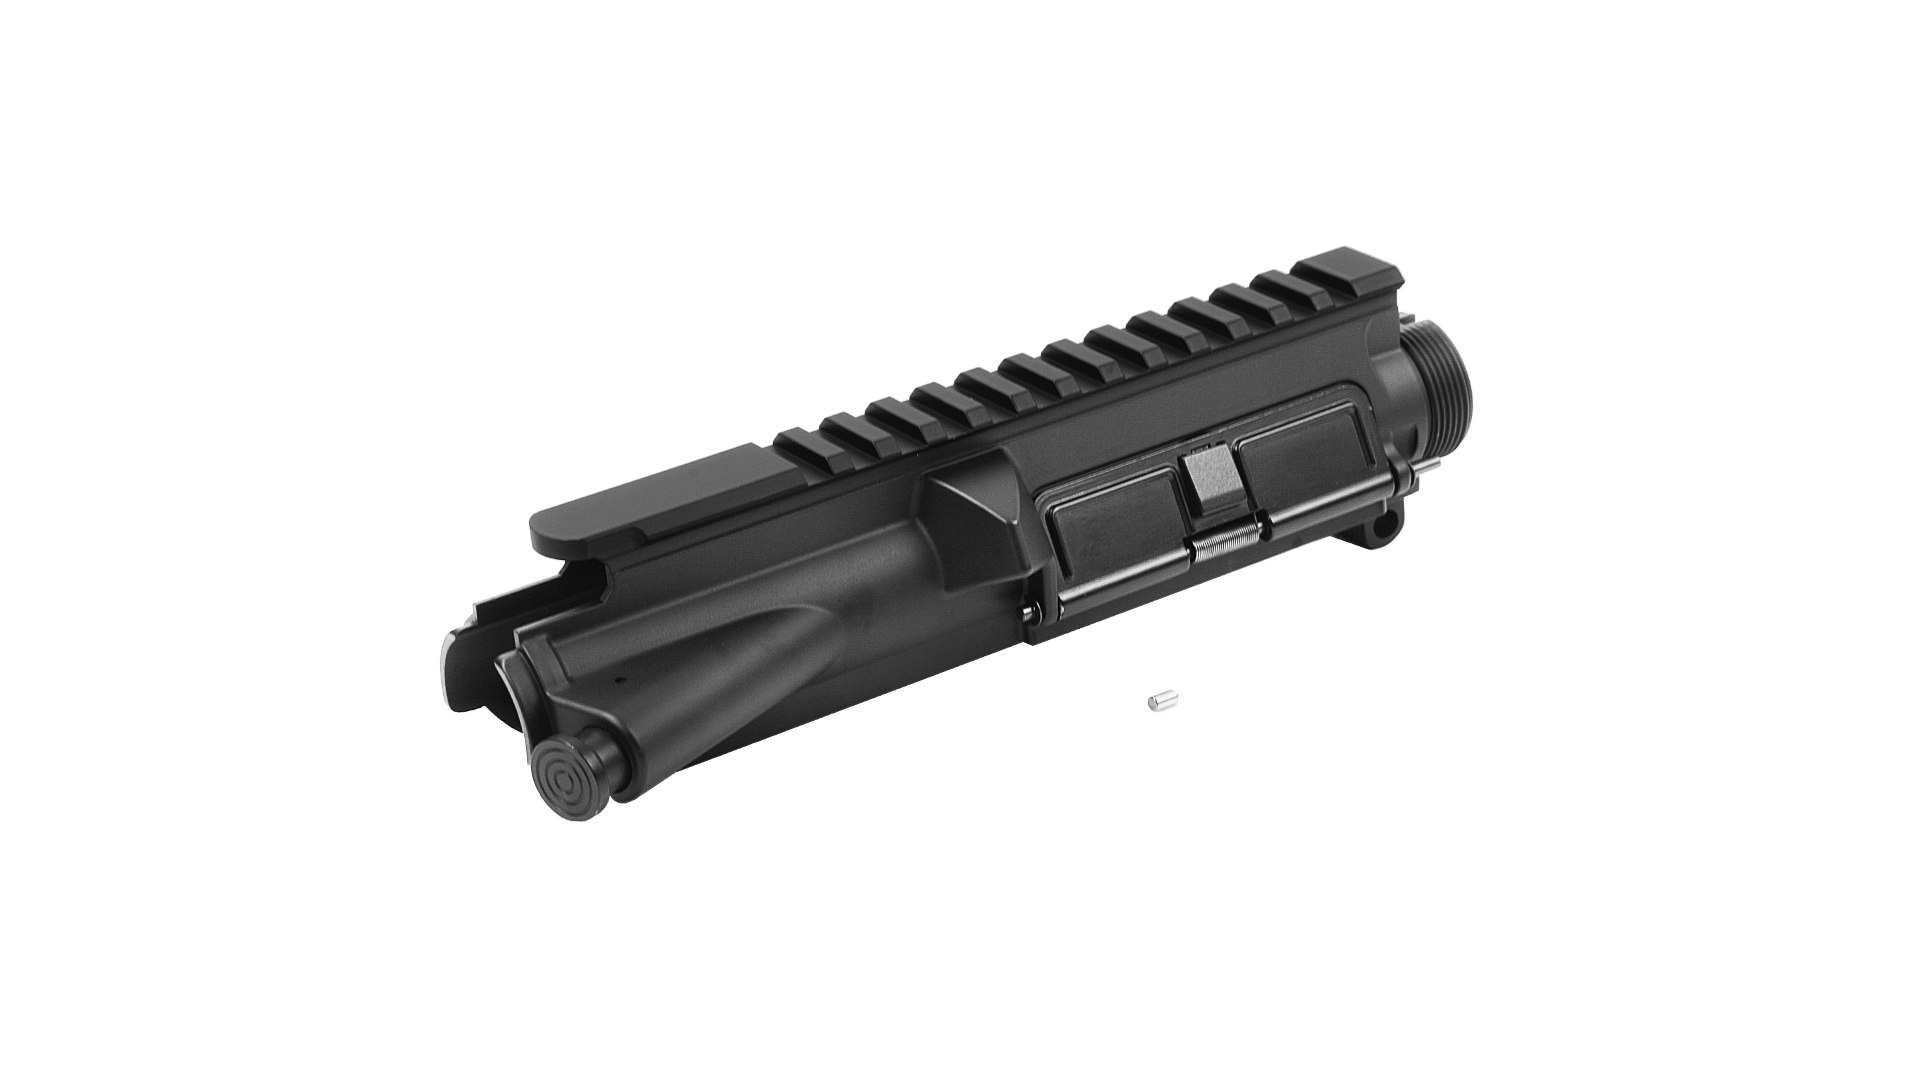 【MA-330】CXP-UK1 上槍身組(一體式齒輪箱用) - 黑色